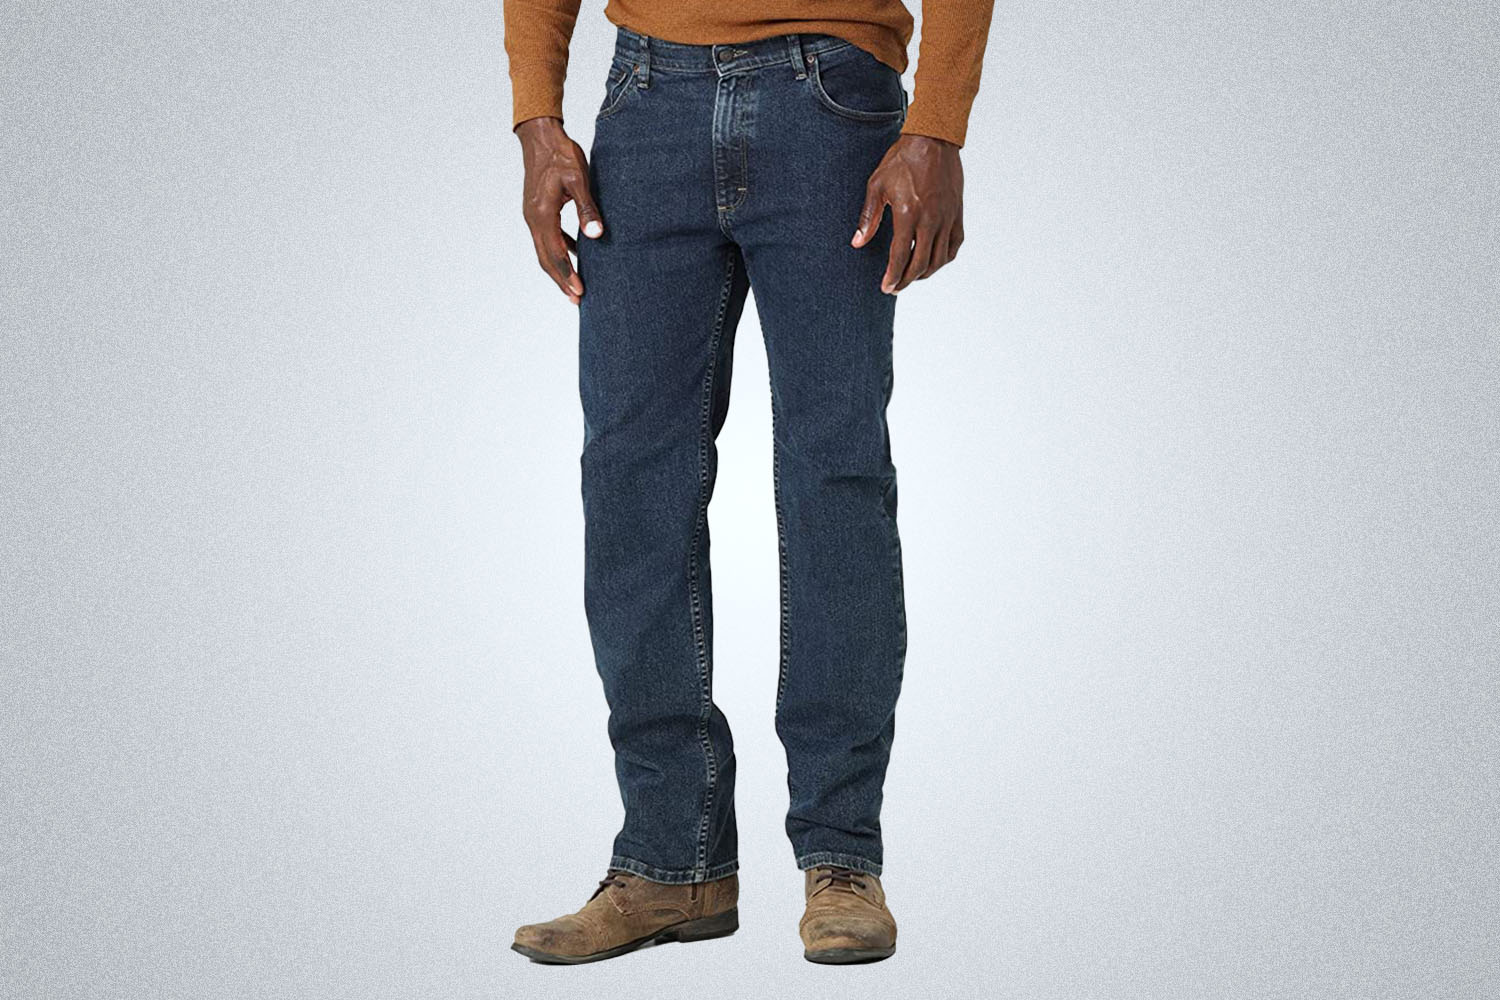 The 12 Best Early Black Friday Deals on Men's Jeans - InsideHook